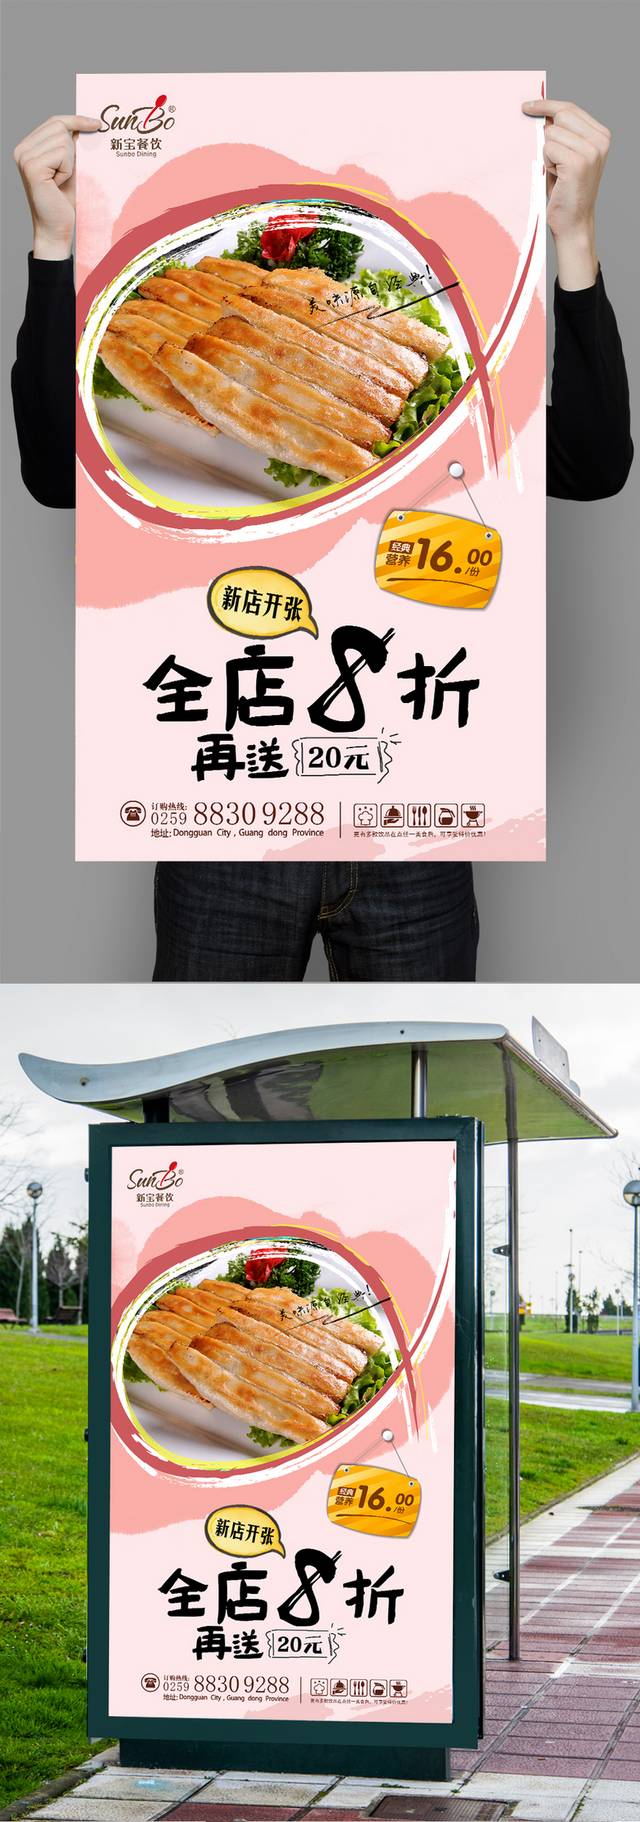 经典高清锅贴宣传海报设计模板